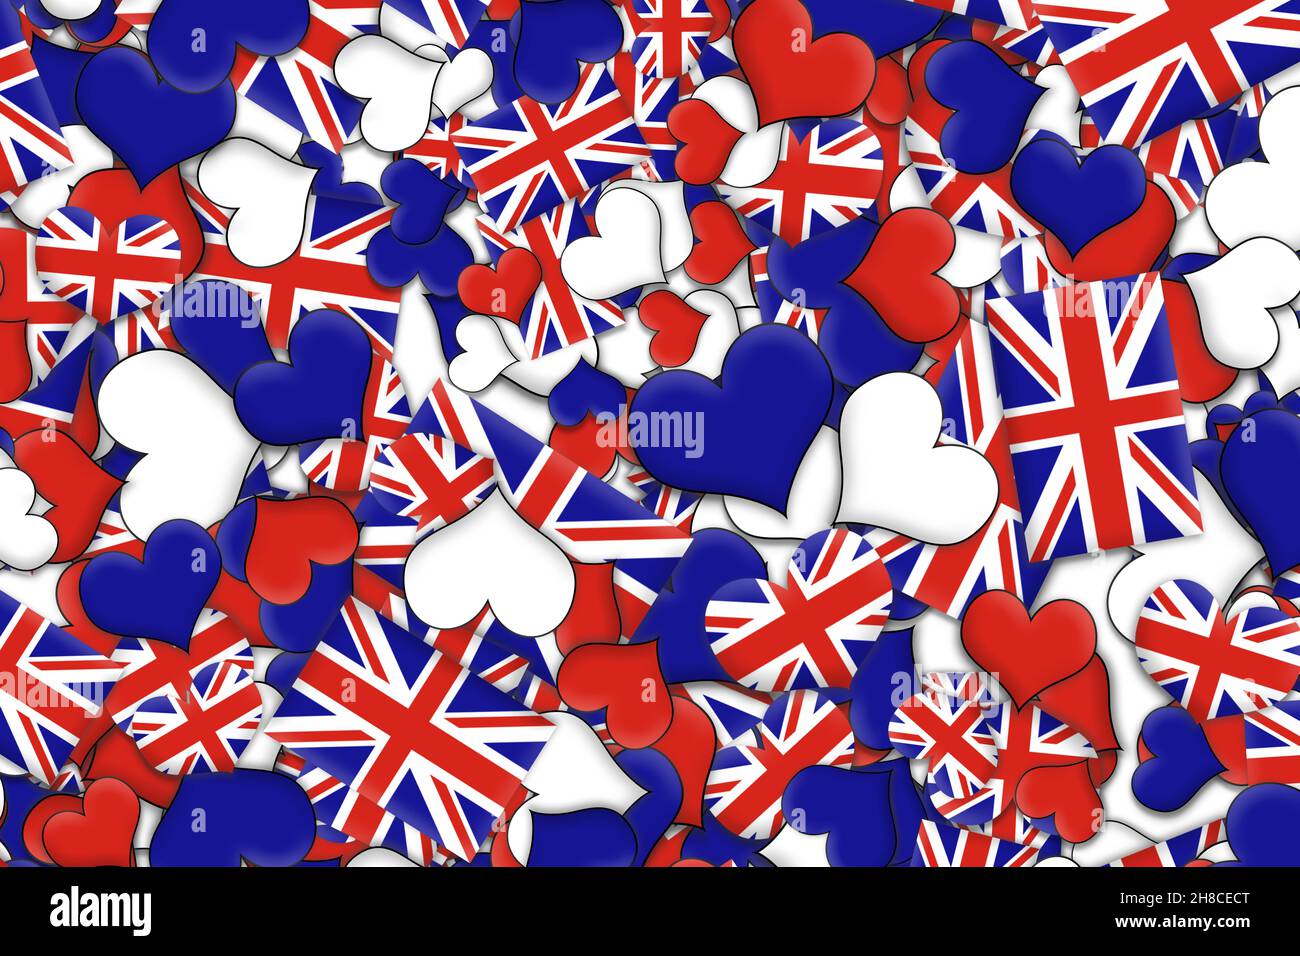 Nếu bạn yêu thích những món quà đầy ý nghĩa và đẹp mắt thì hình ảnh Union Jack Heart chắc chắn sẽ bắt đầu làm tan chảy trái tim bạn. Mẫu thiết kế này kết hợp giữa chiếc thương và hình dạng trái tim mang nét độc đáo của cờ Liên hiệp Vương quốc Anh.